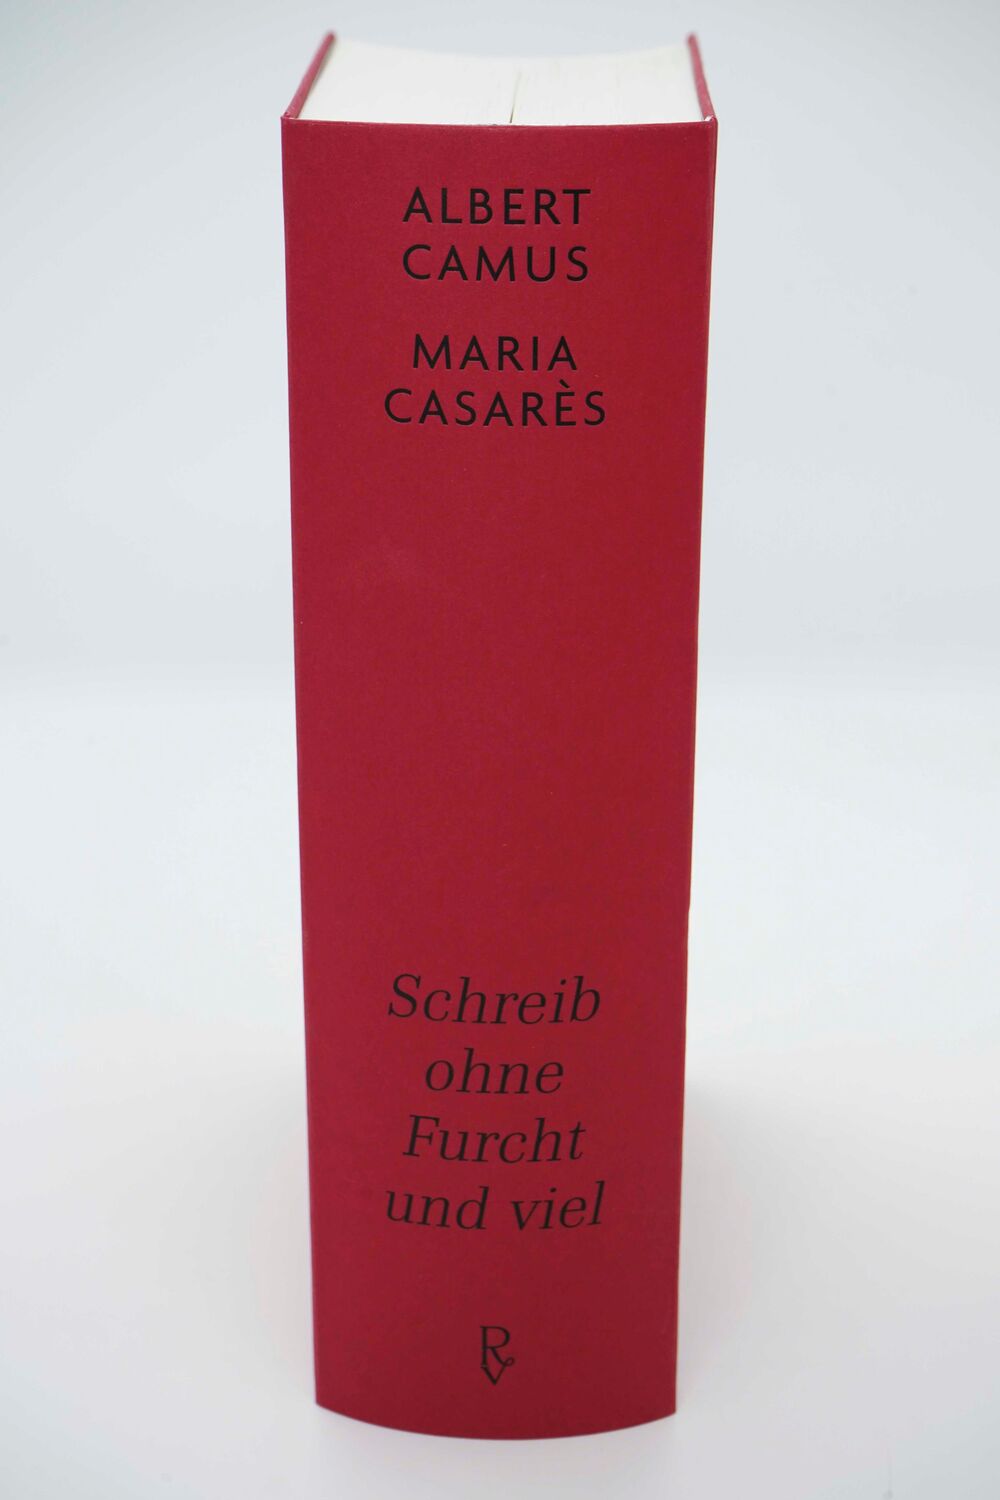 Bild: 9783498001315 | Schreib ohne Furcht und viel | Albert Camus (u. a.) | Buch | 1568 S.